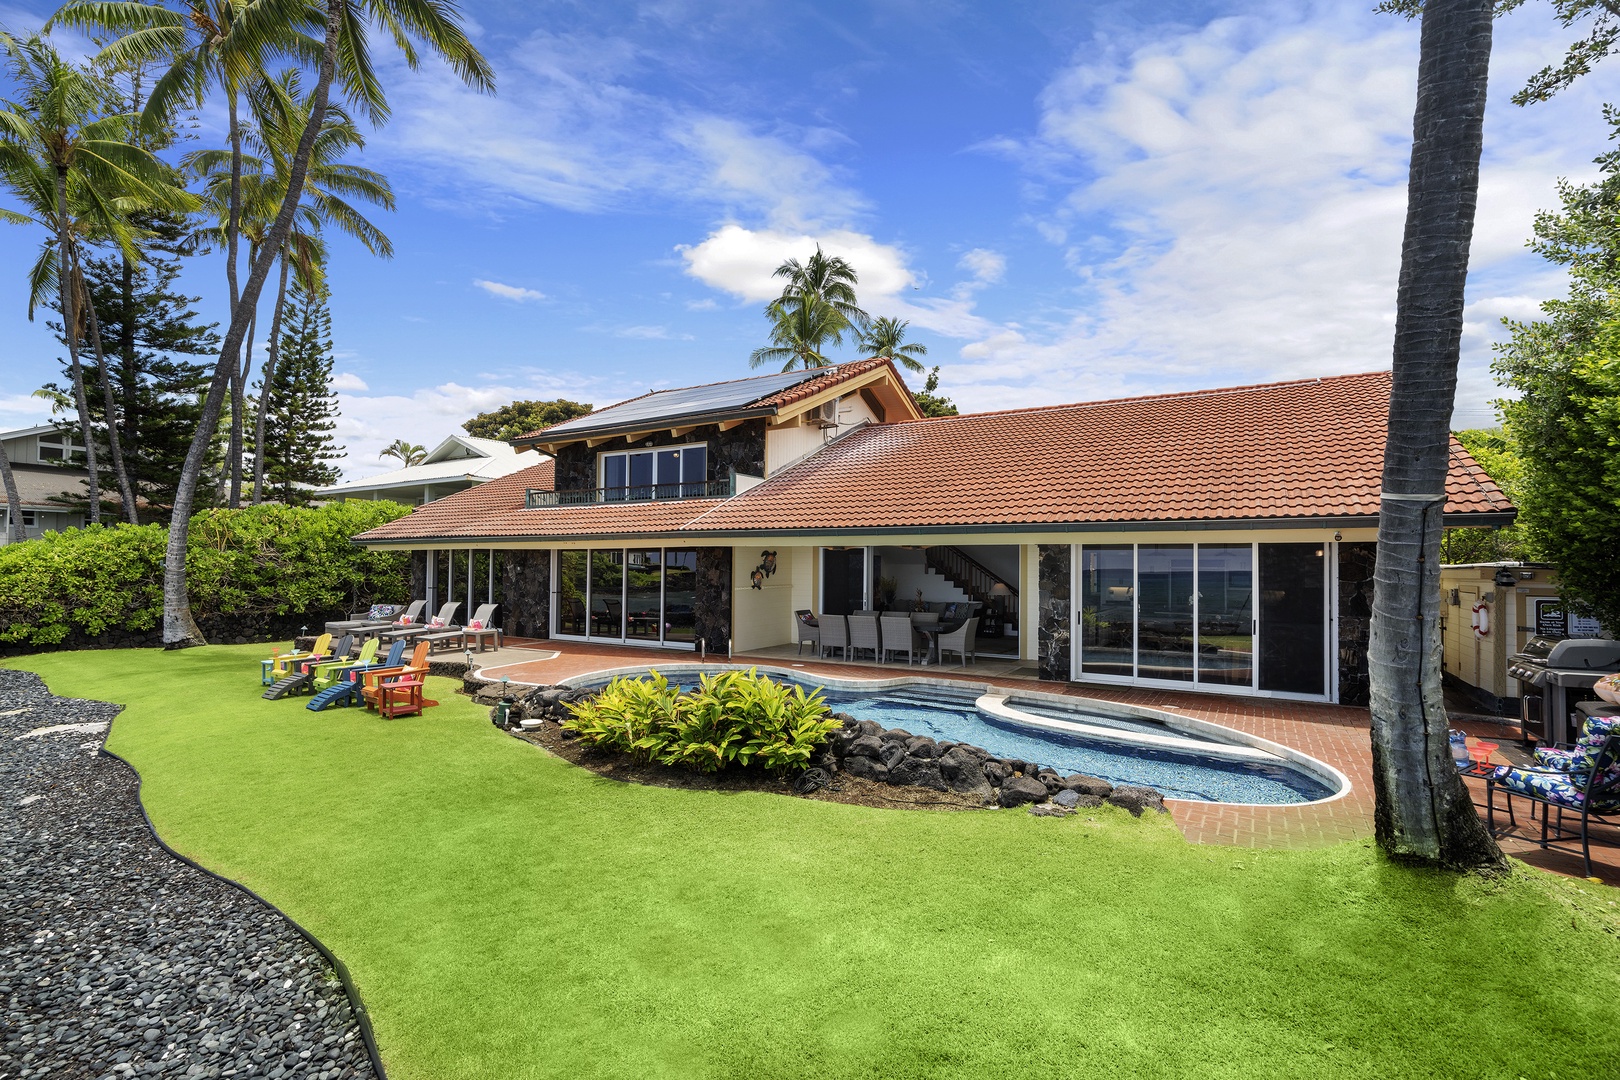 Kailua Kona Vacation Rentals, Hale Pua - Hale Pua back yard / Ocean side